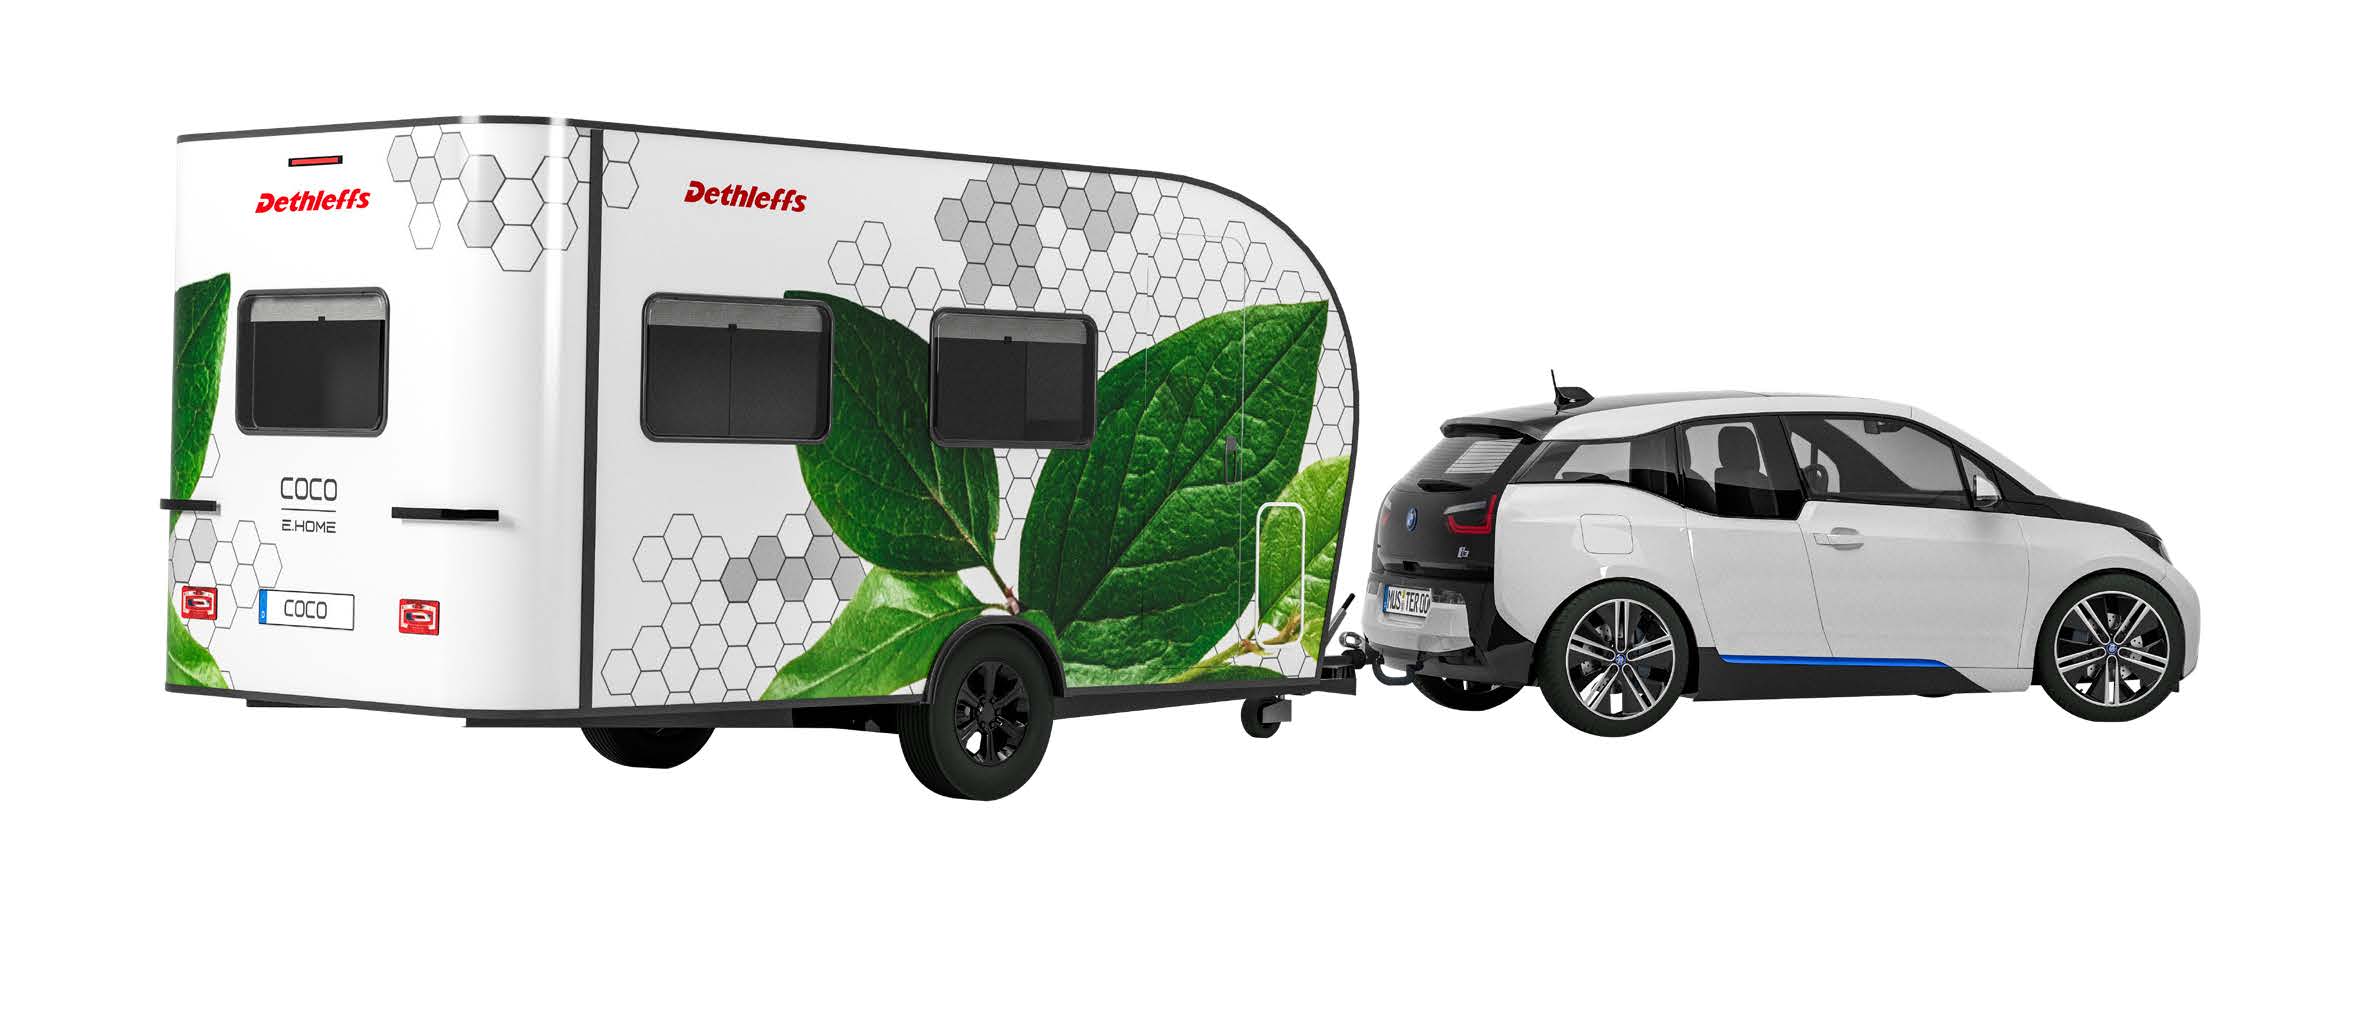 frilagd bild på bil med husvagn. Husvagnen är dekorerad med stora gröna påmålade blad mot vit botten.